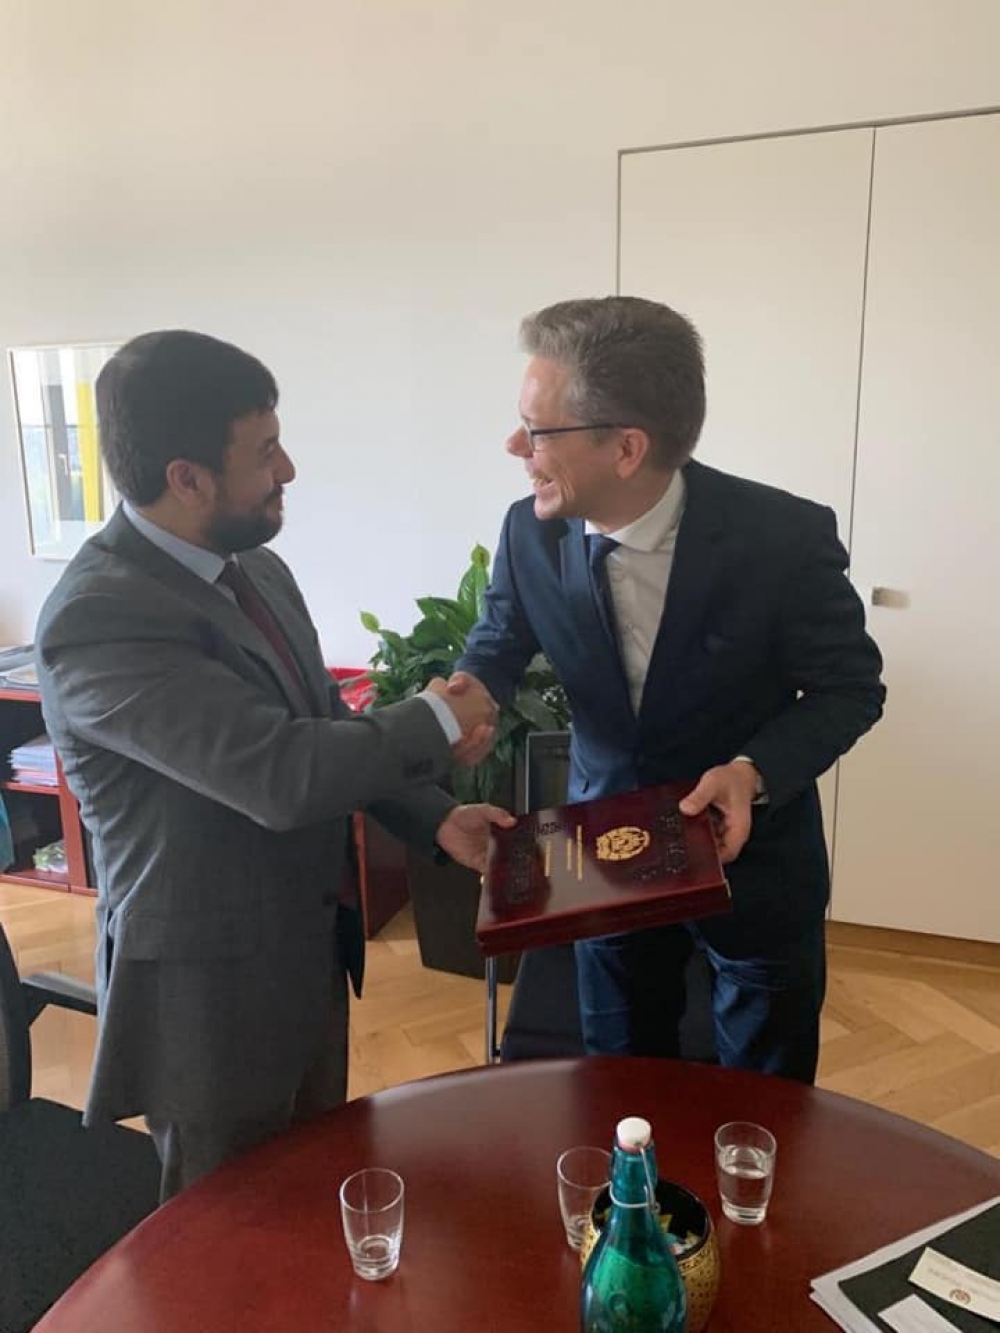 سفیر و نماینده دایمی افغانستان با رئیس امور آسیا پاسفیک وزارت امور خارجه سویس  دیدار نمود